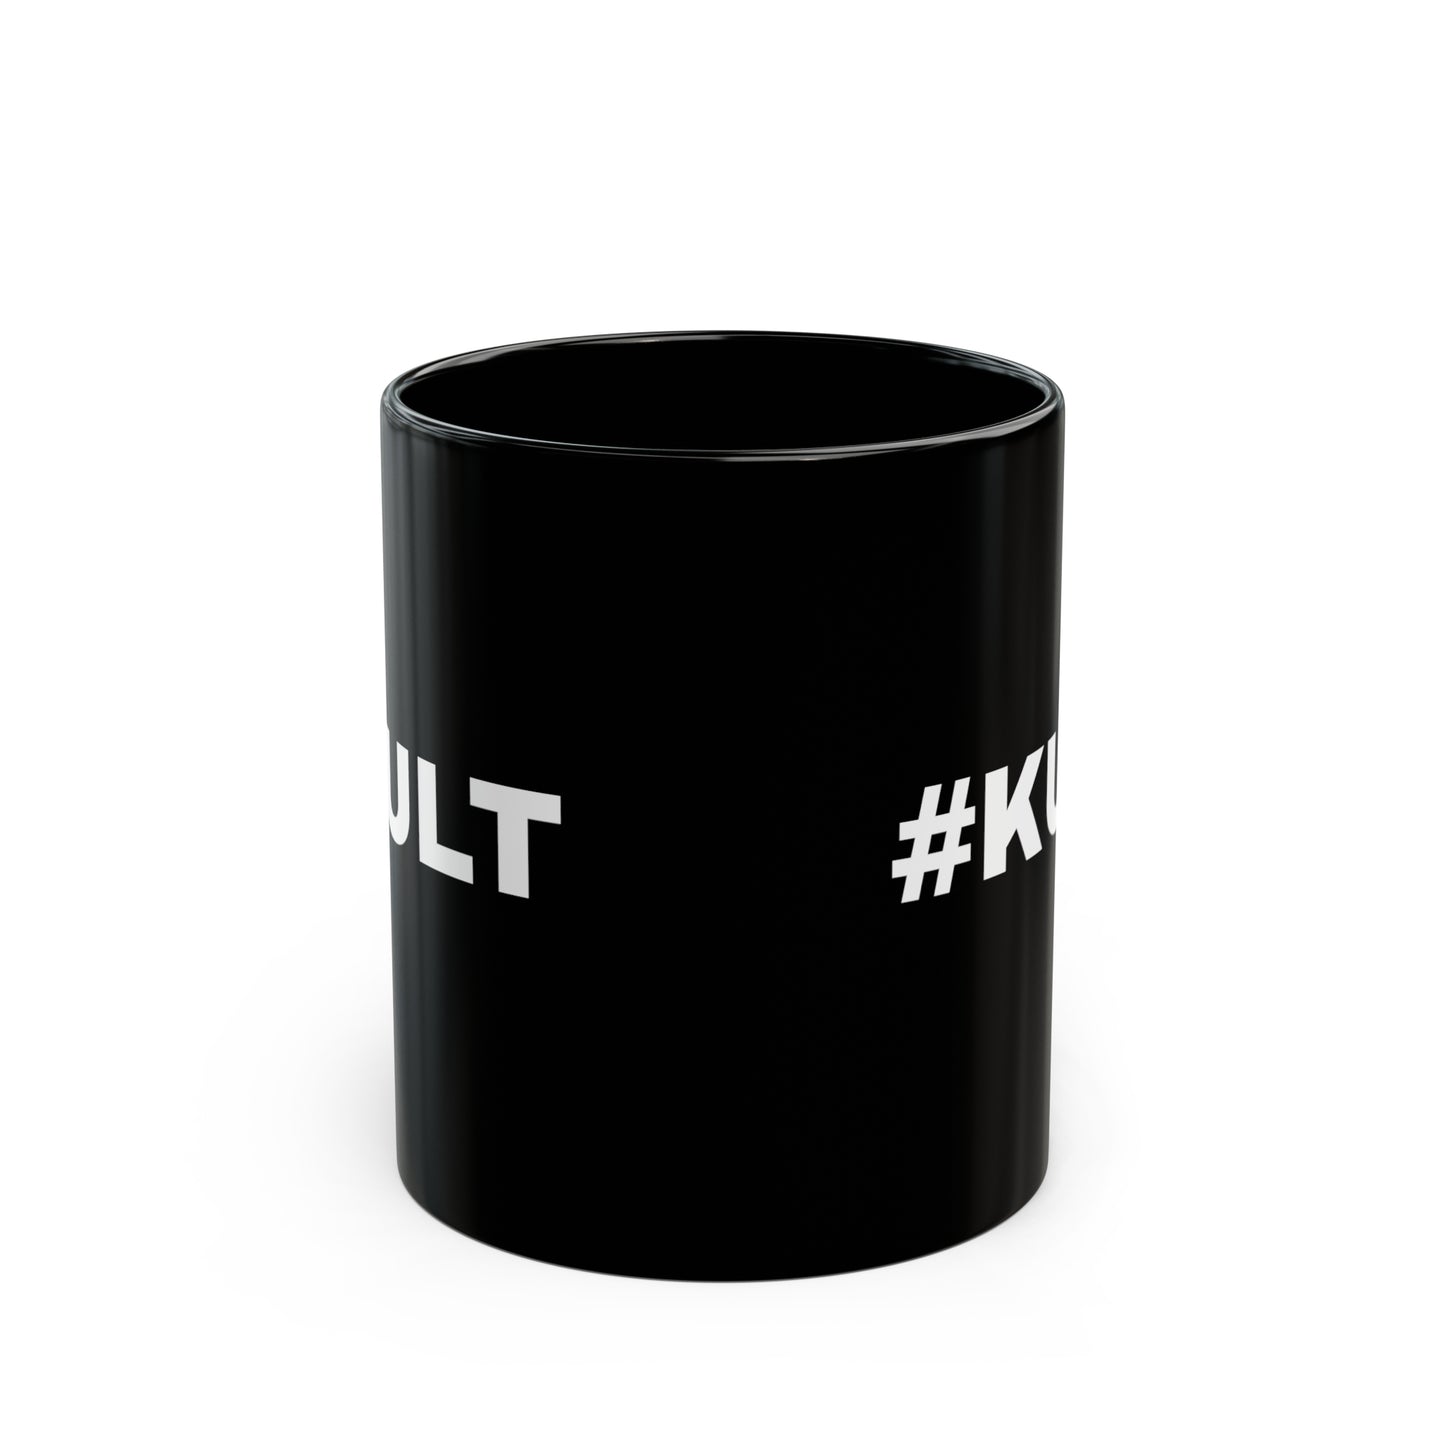 #KULT - Black Mug (11oz)